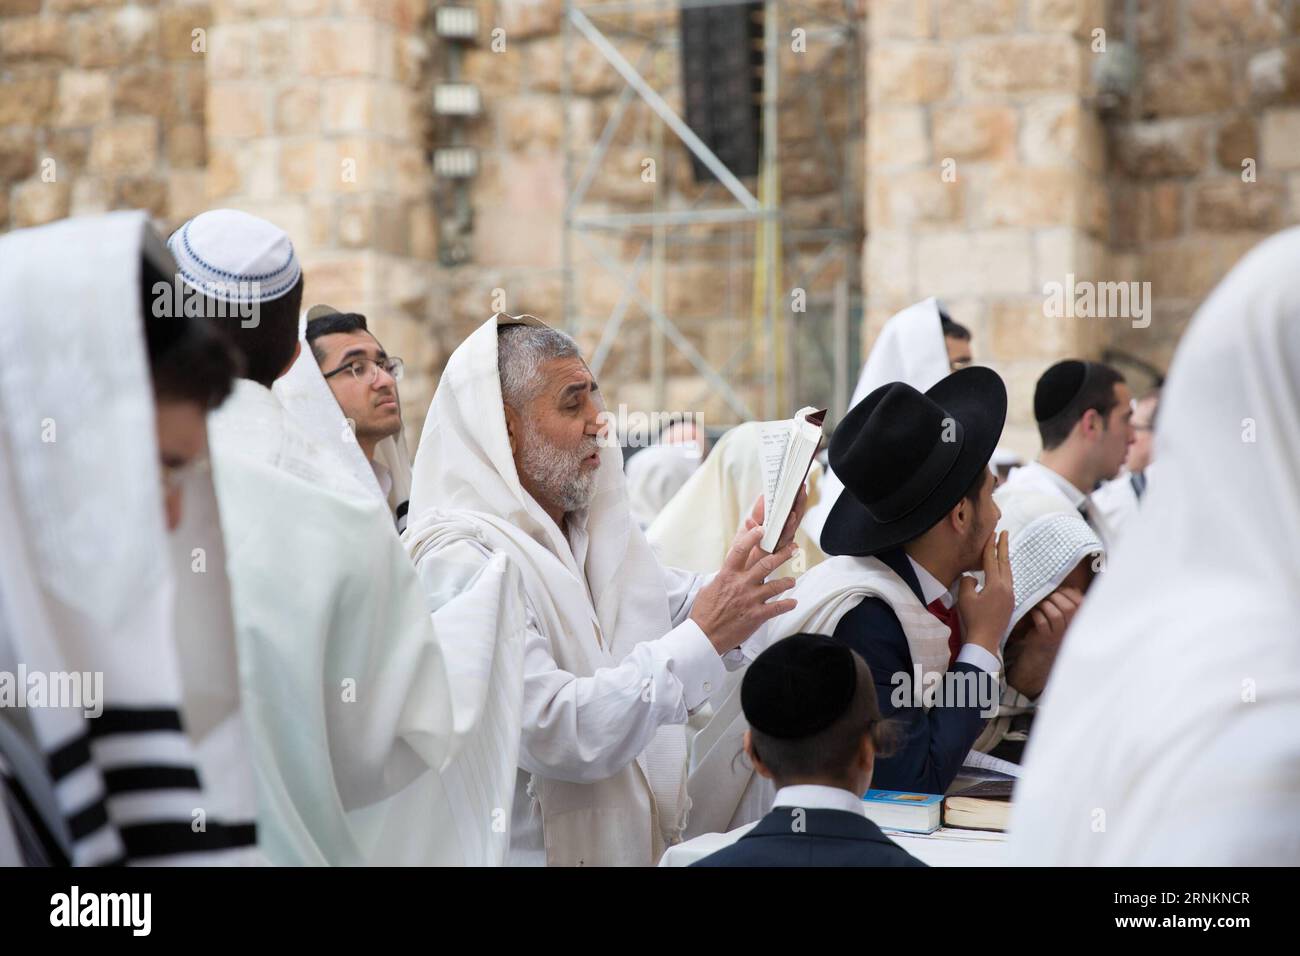 170413 -- GERUSALEMME, 13 aprile 2017 -- ebrei ortodossi assistono a Birkat Kohanim, una cerimonia di benedizione, durante la festa ebraica di Pesach presso il muro Occidentale nella città Vecchia di Gerusalemme, 13 aprile 2017. Pesach, una festa ebraica che segna l'esodo del popolo ebraico dall'Egitto, dalla schiavitù alla libertà. Guo Yujmmn MIDEAST-JERUSALEM-Western WALL-PASSOVER guoyu PUBLICATIONxNOTxINxCHN Foto Stock